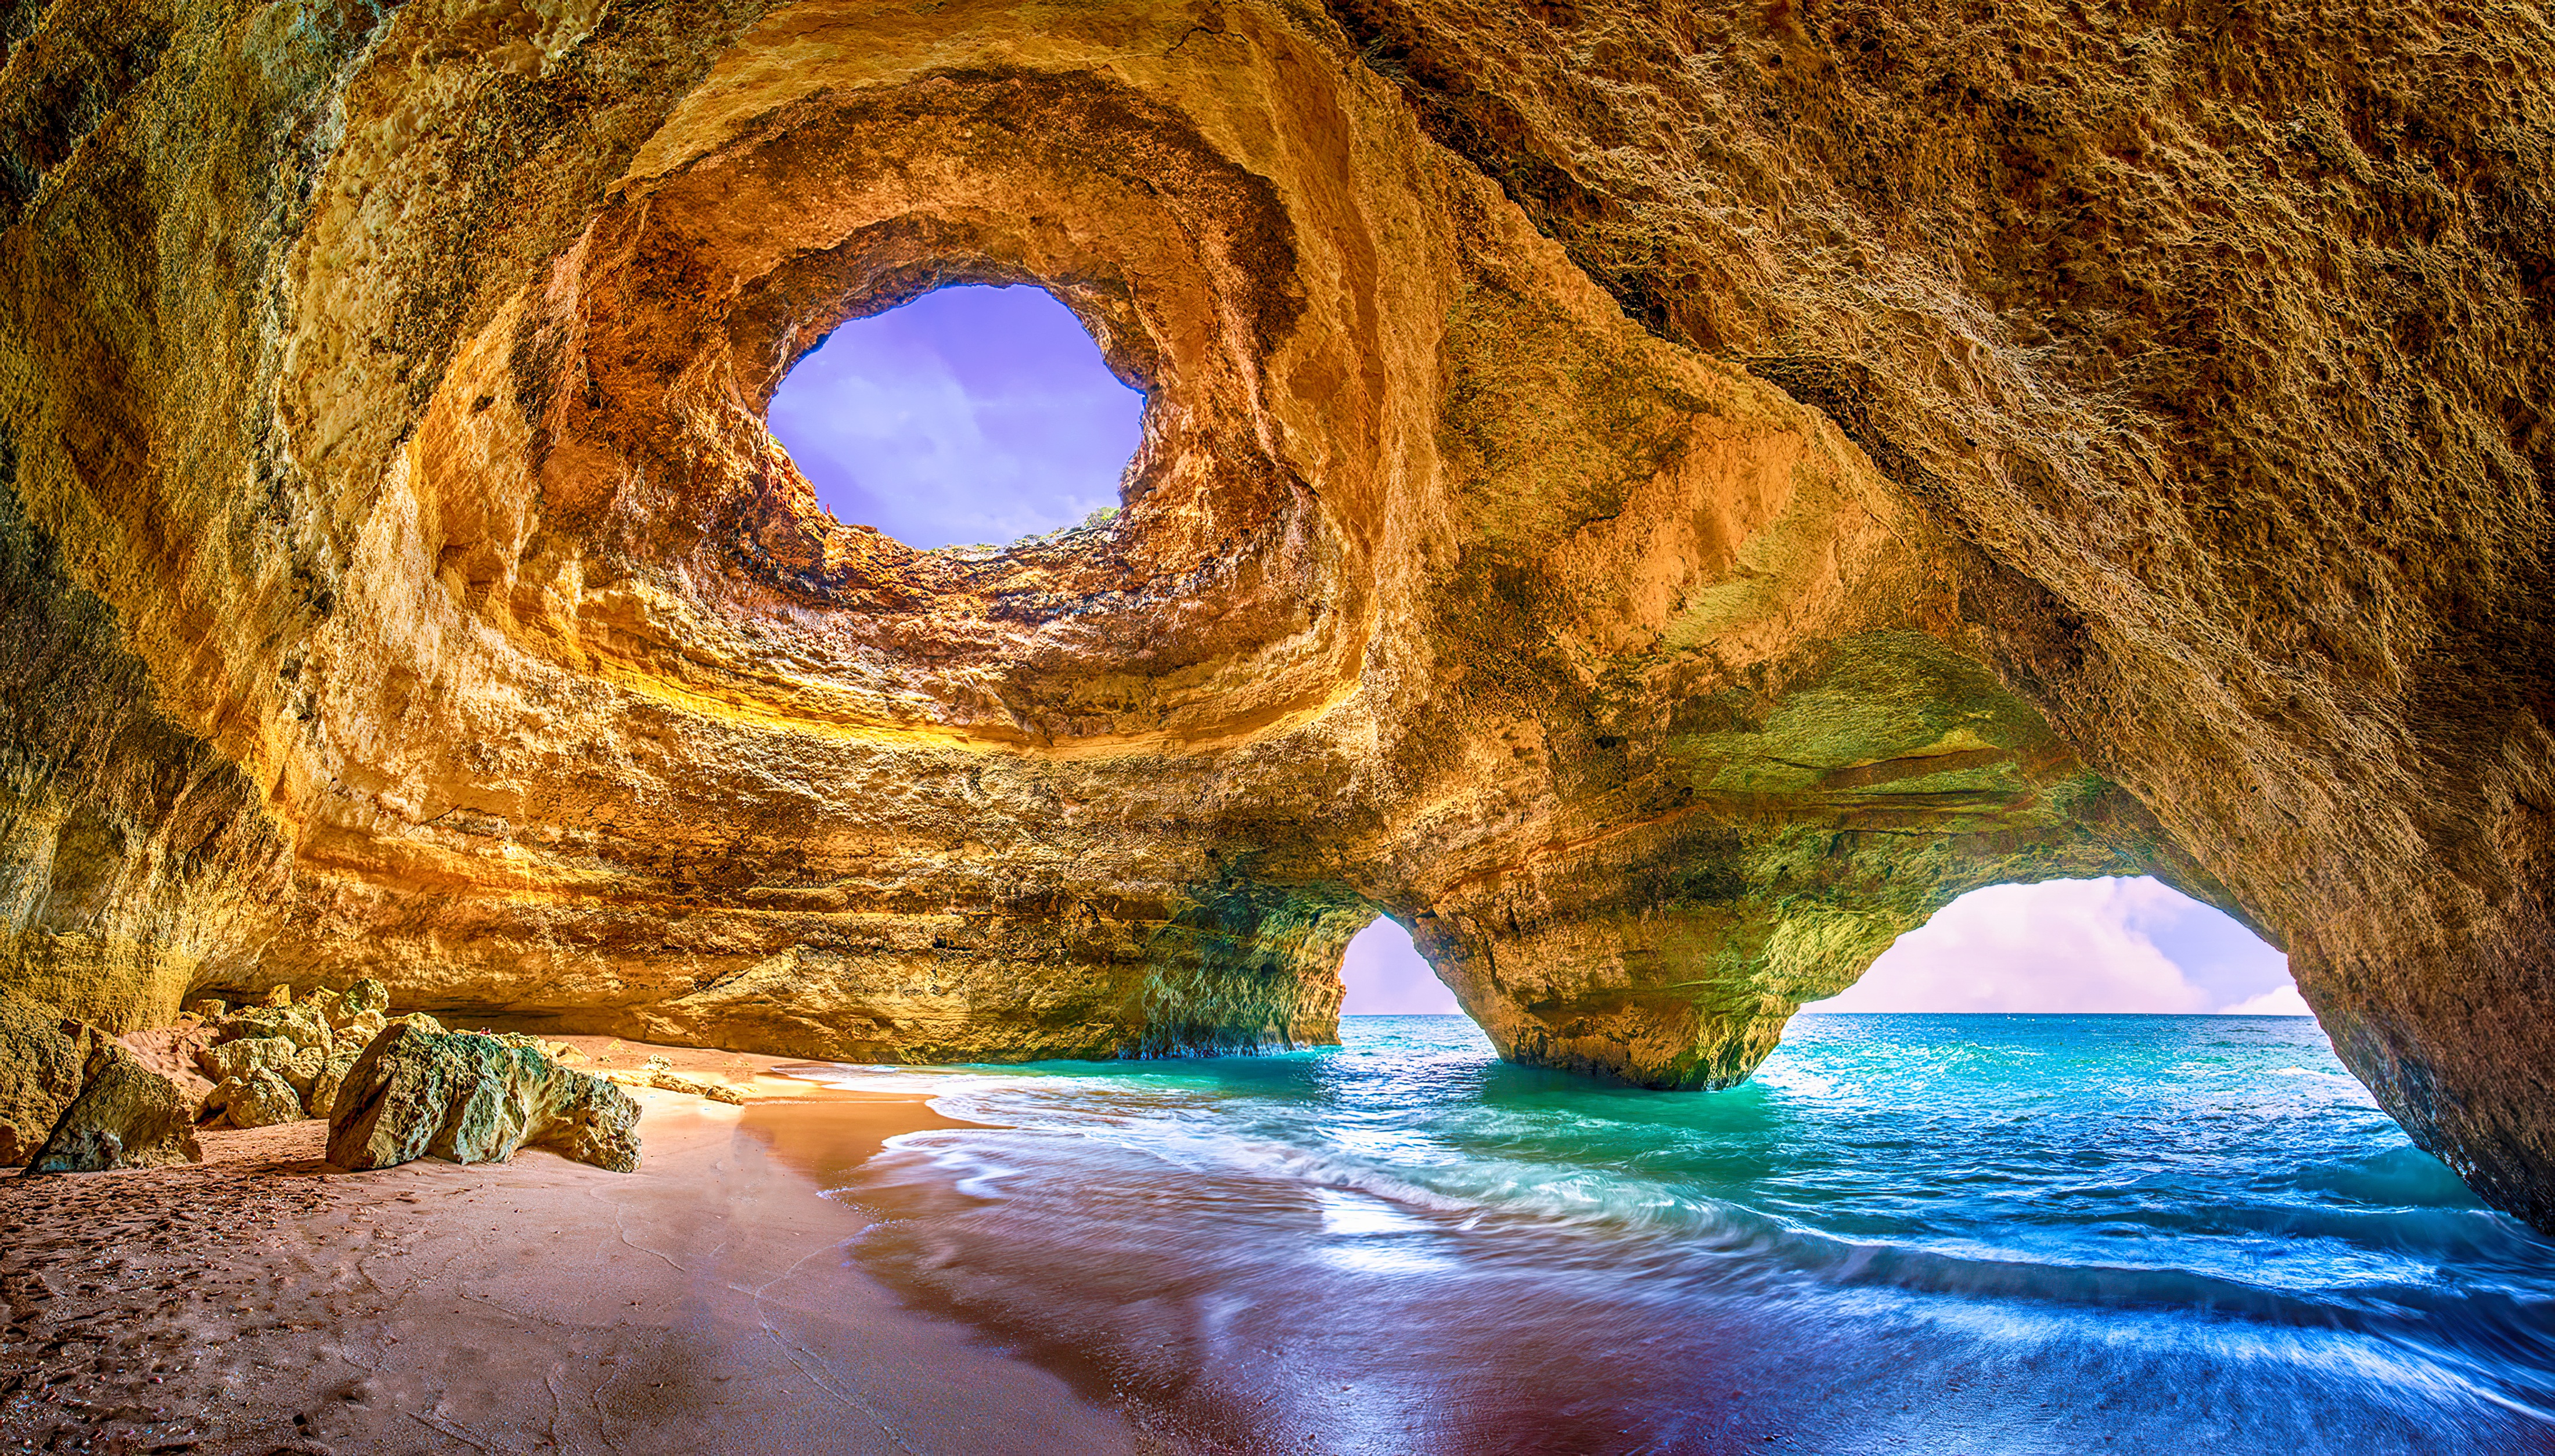 Известные природные достопримечательности. Альгар де Бенагил. Пещера Бенагил Португалия. Пещера в Алгарве, Португалия. Пляж в пещере Бенагил (Португалия).